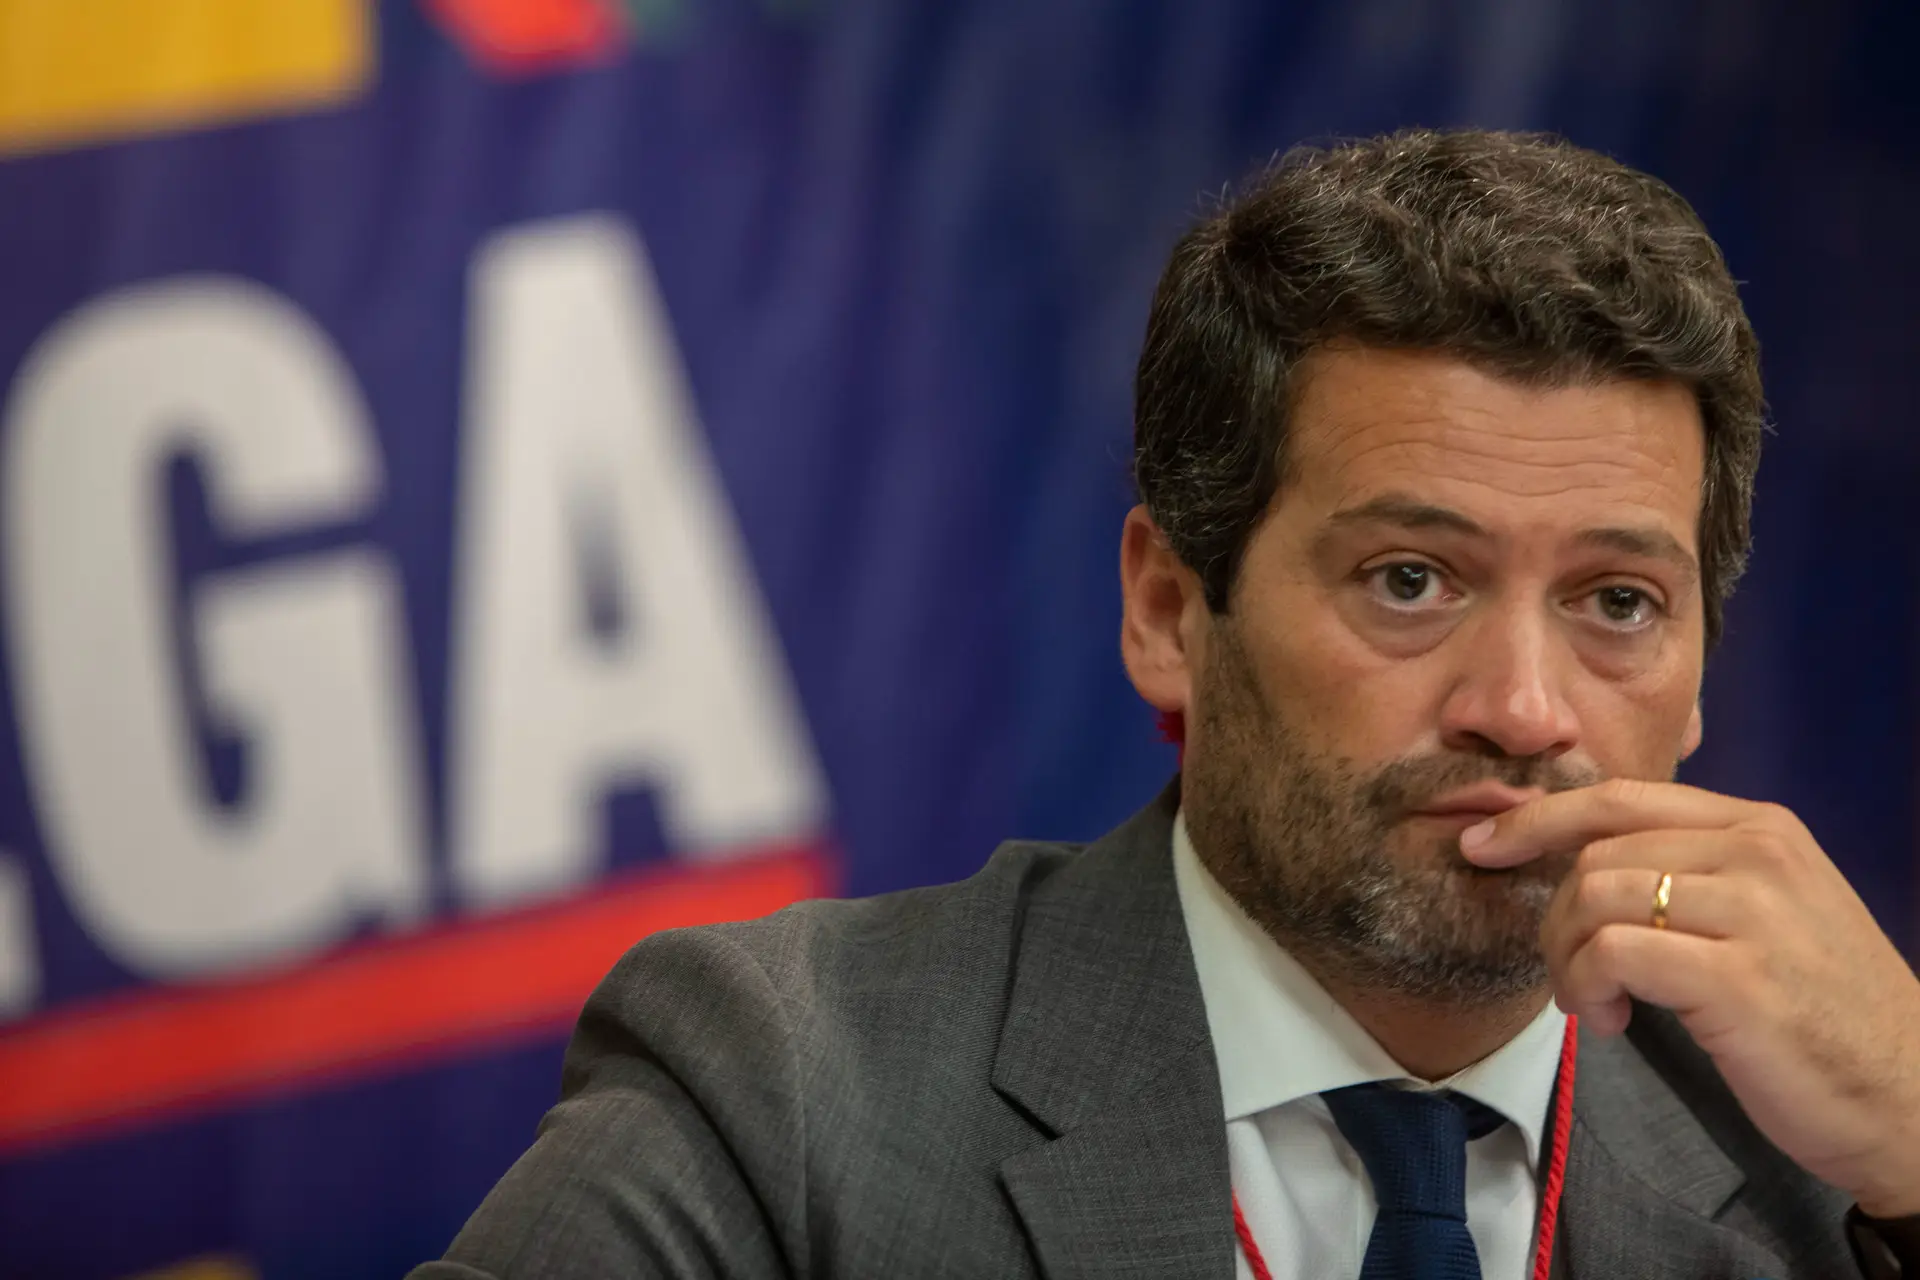 André Ventura promete lutar para Santos Silva não chegar a Presidente da República